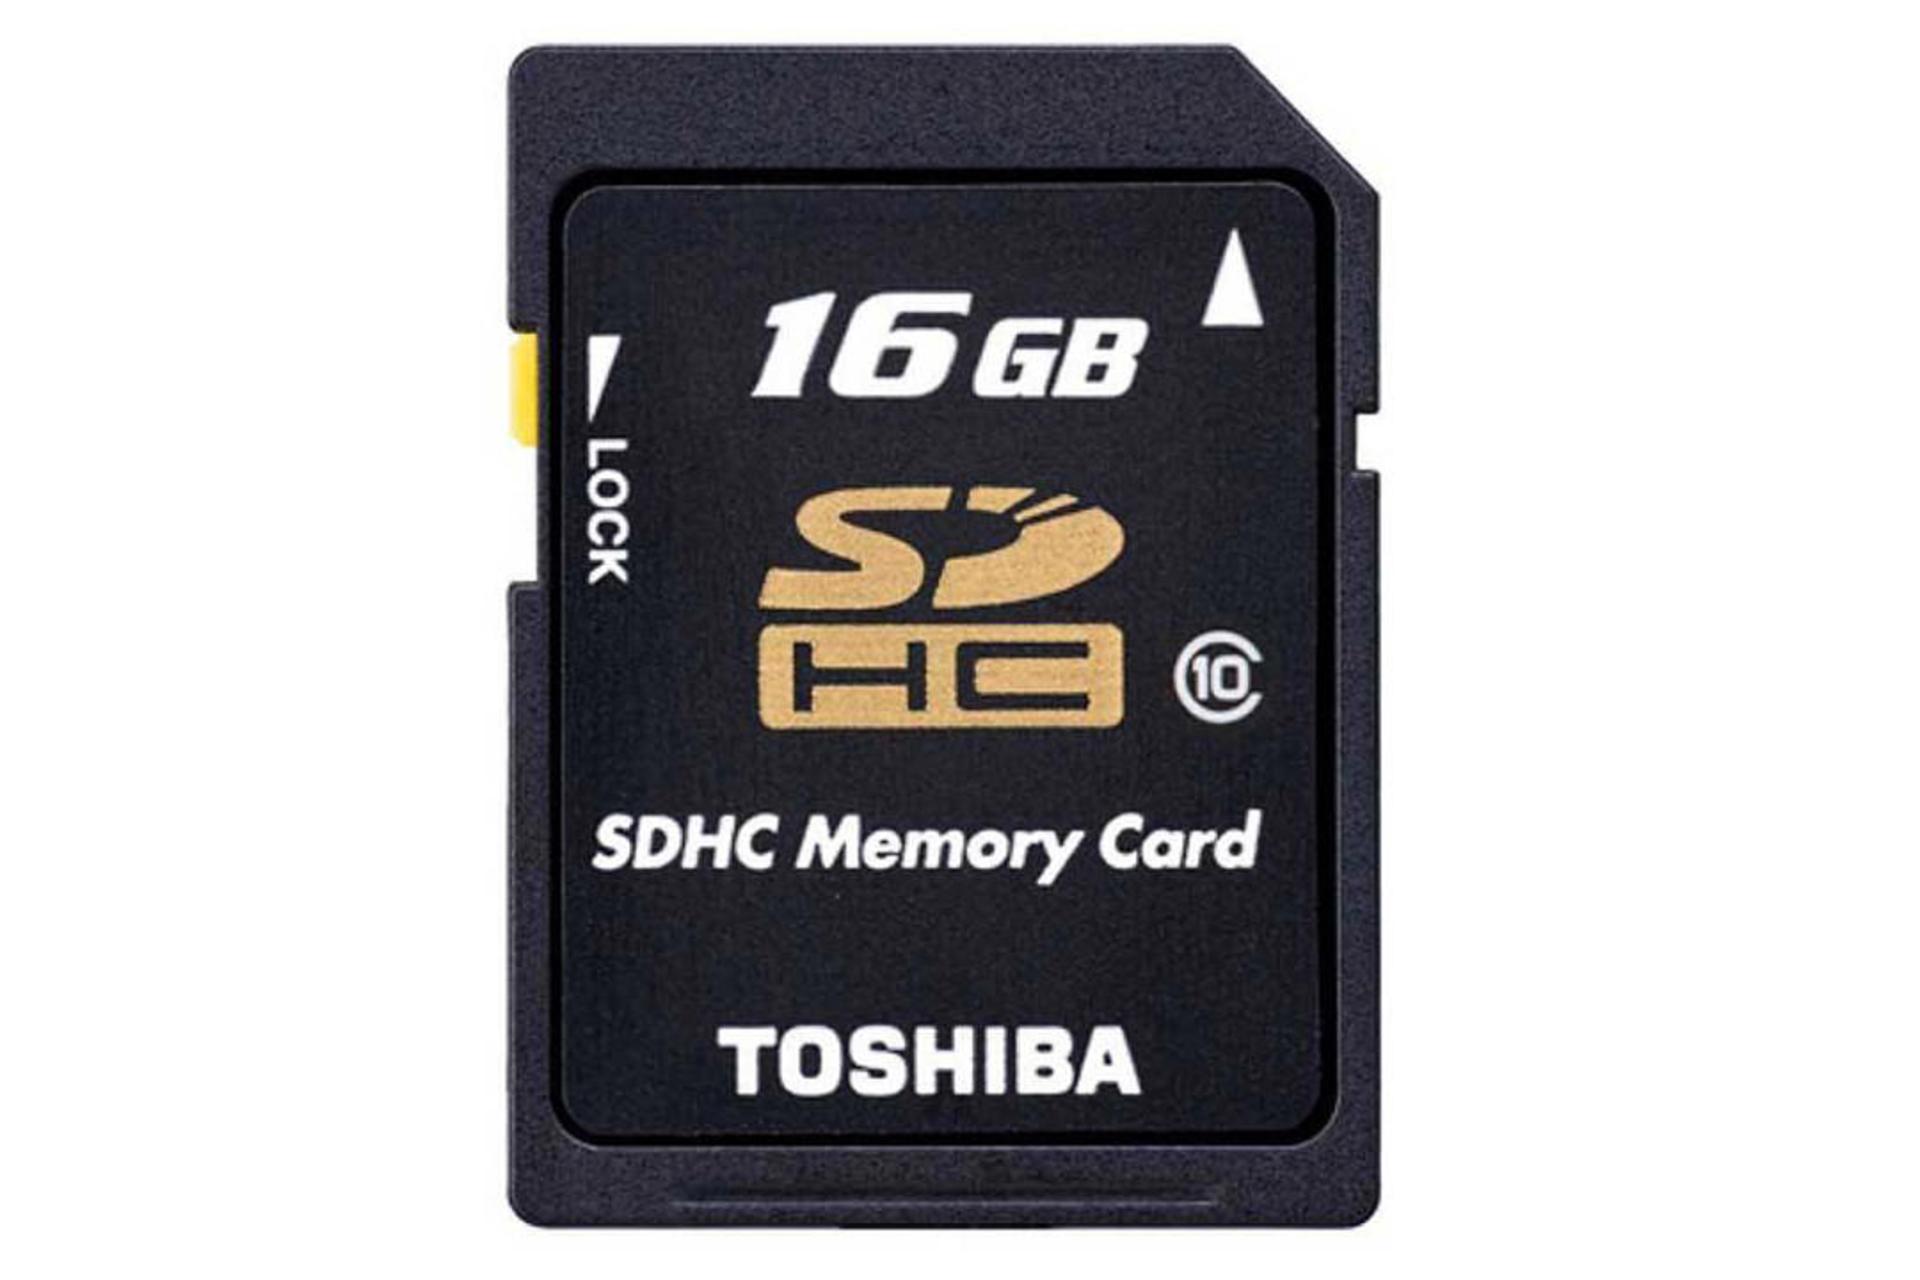 مرجع متخصصين ايران Toshiba Professional SDHC Class 10 16GB